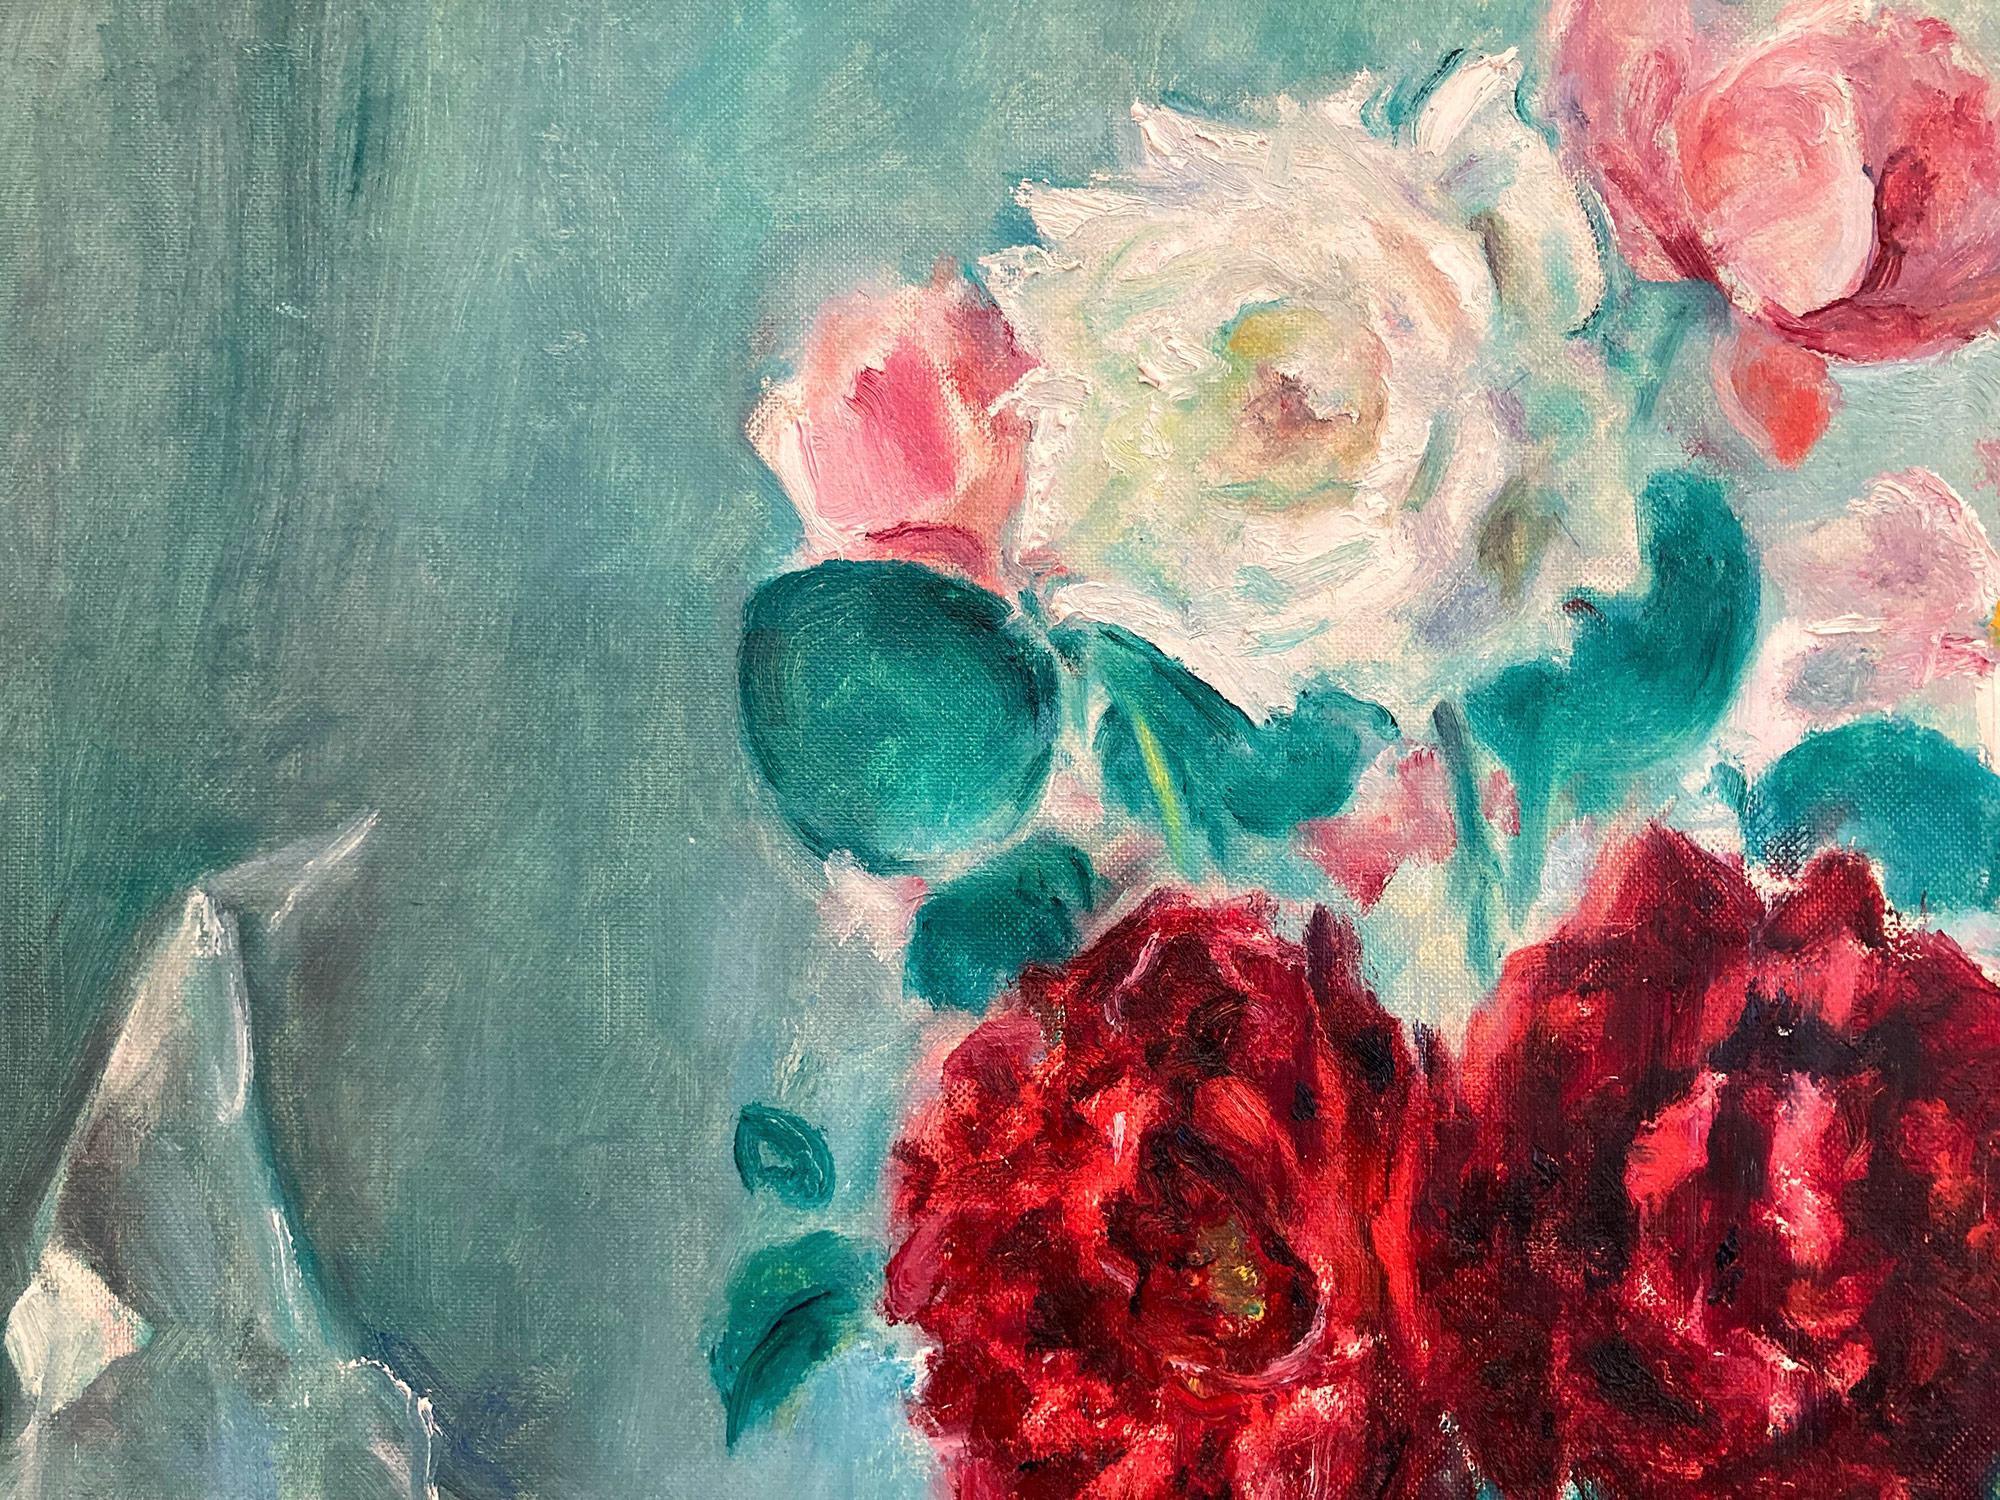 La représentation fantaisiste par Martha Walter d'une scène matinale d'intérieur avec des roses blanches, roses et rouges disposées dans des vases en verre et en céramique au-dessus d'une table avec une cheminée rouge, et un bouquet de roses roses à